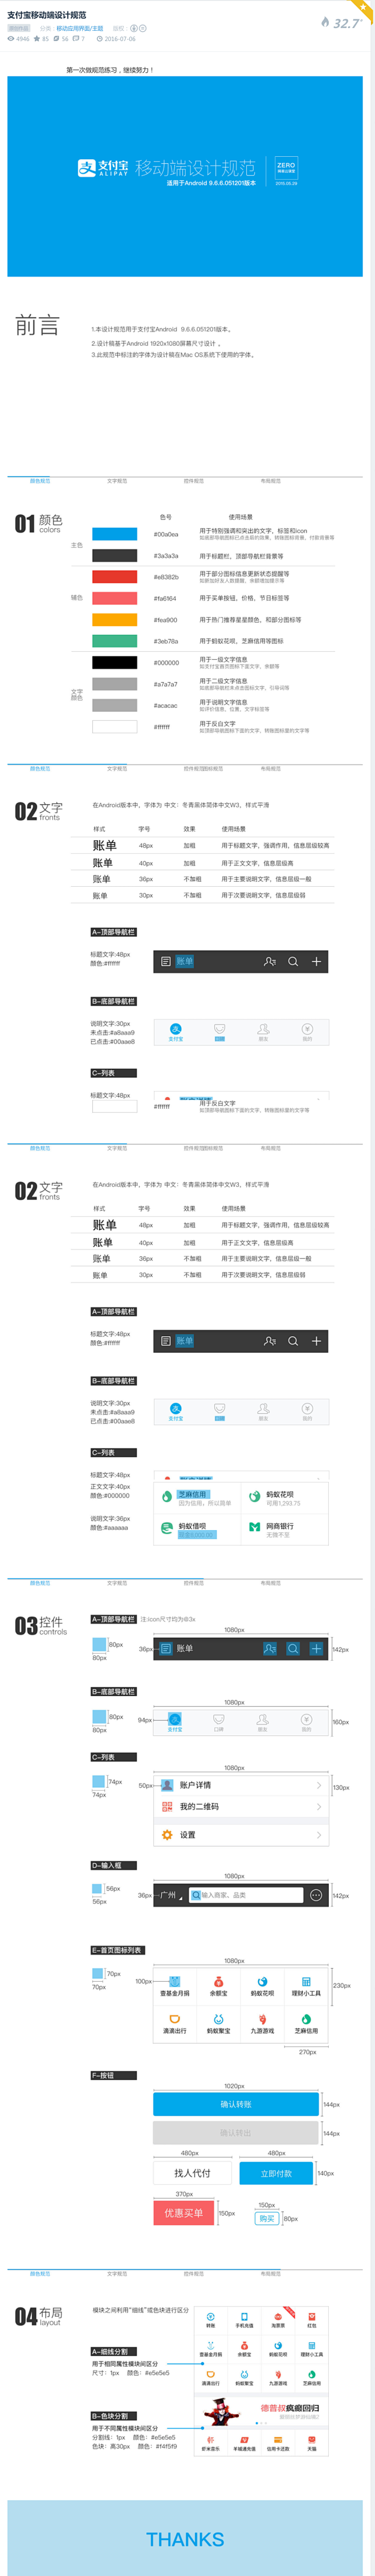 支付宝移动端设计规范-UI中国-专业用户...